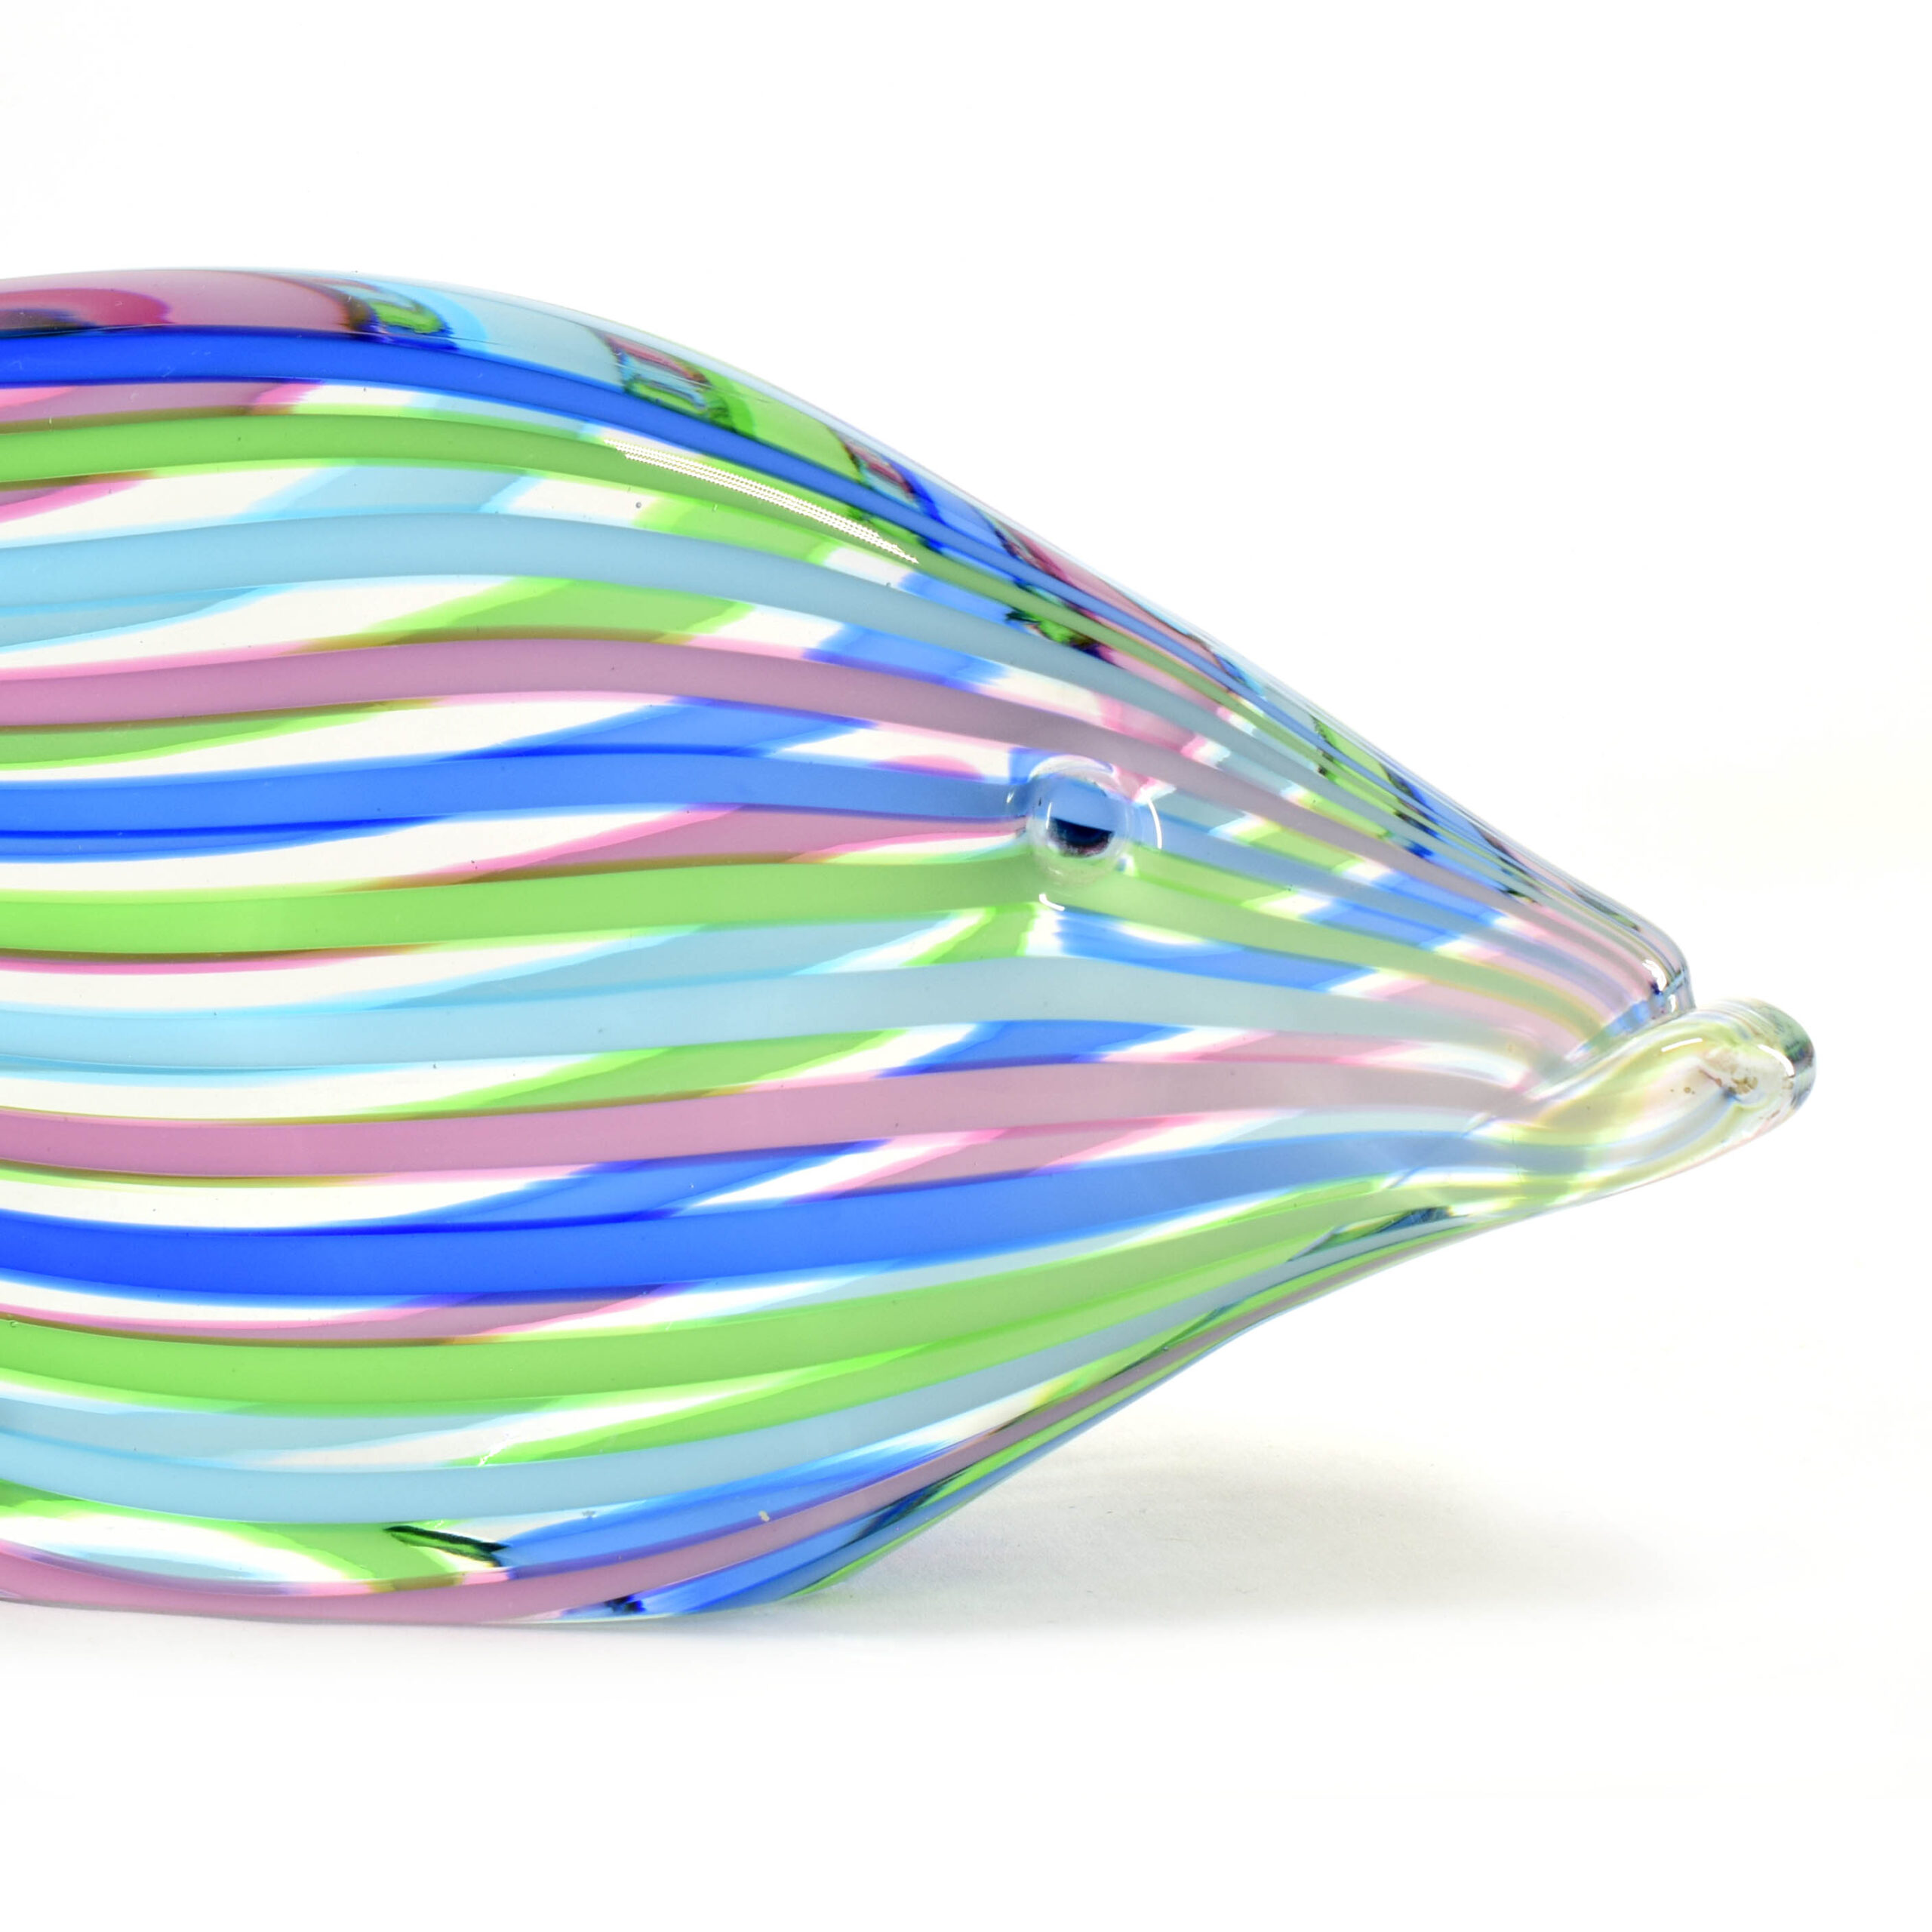 Murano Glass Mian Pesce Glassware - (Art. 34784)